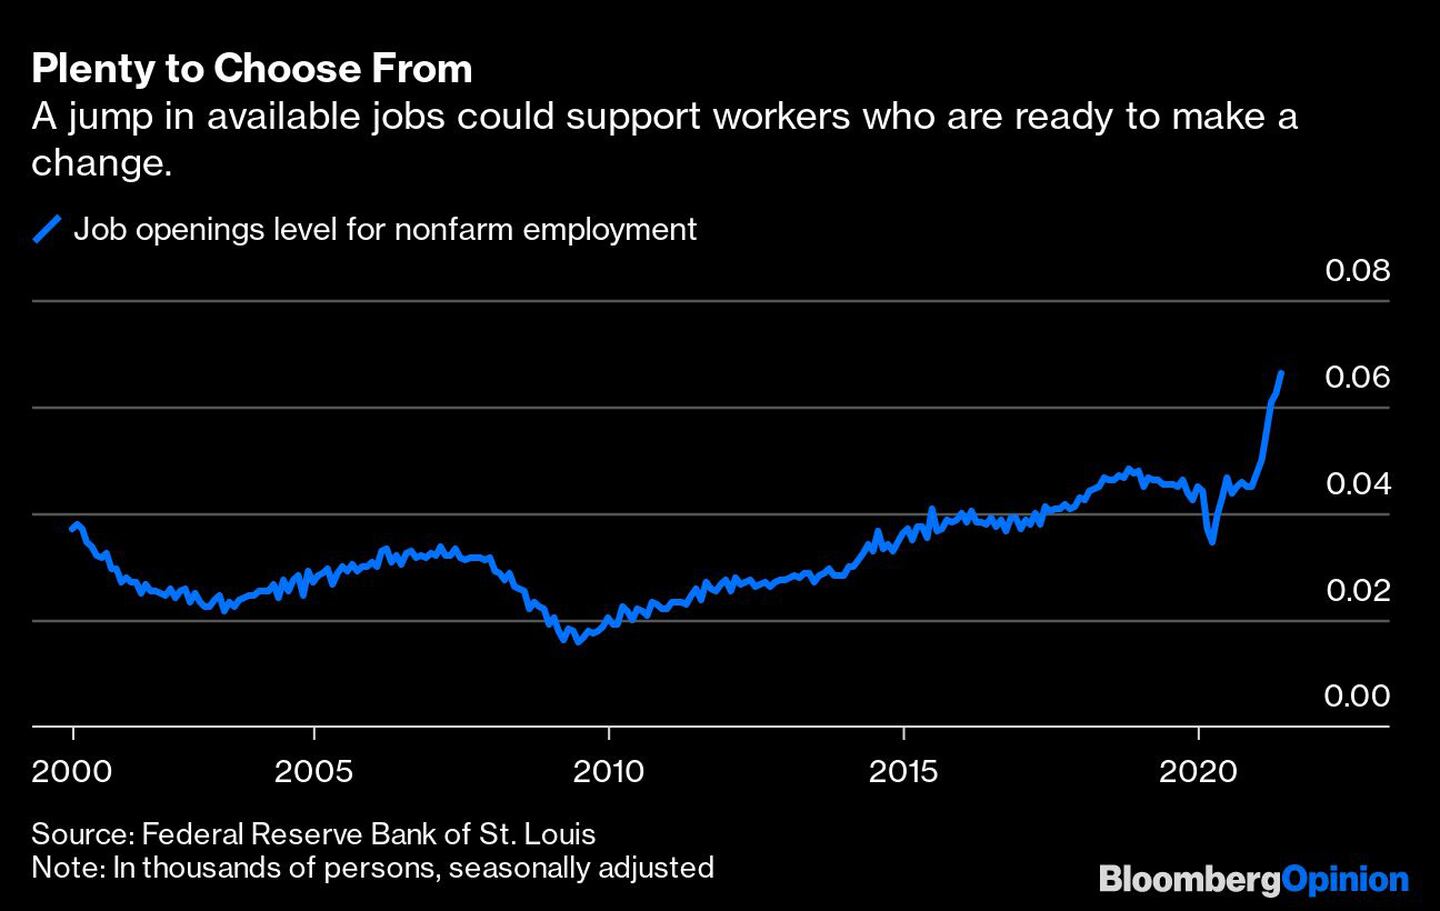 Un aumento de los puestos de trabajo disponibles podría apoyar a los trabajadores que están dispuestos a hacer un cambio
Azul: nivel de ofertas de trabajo para el empleo no agrícola
dfd